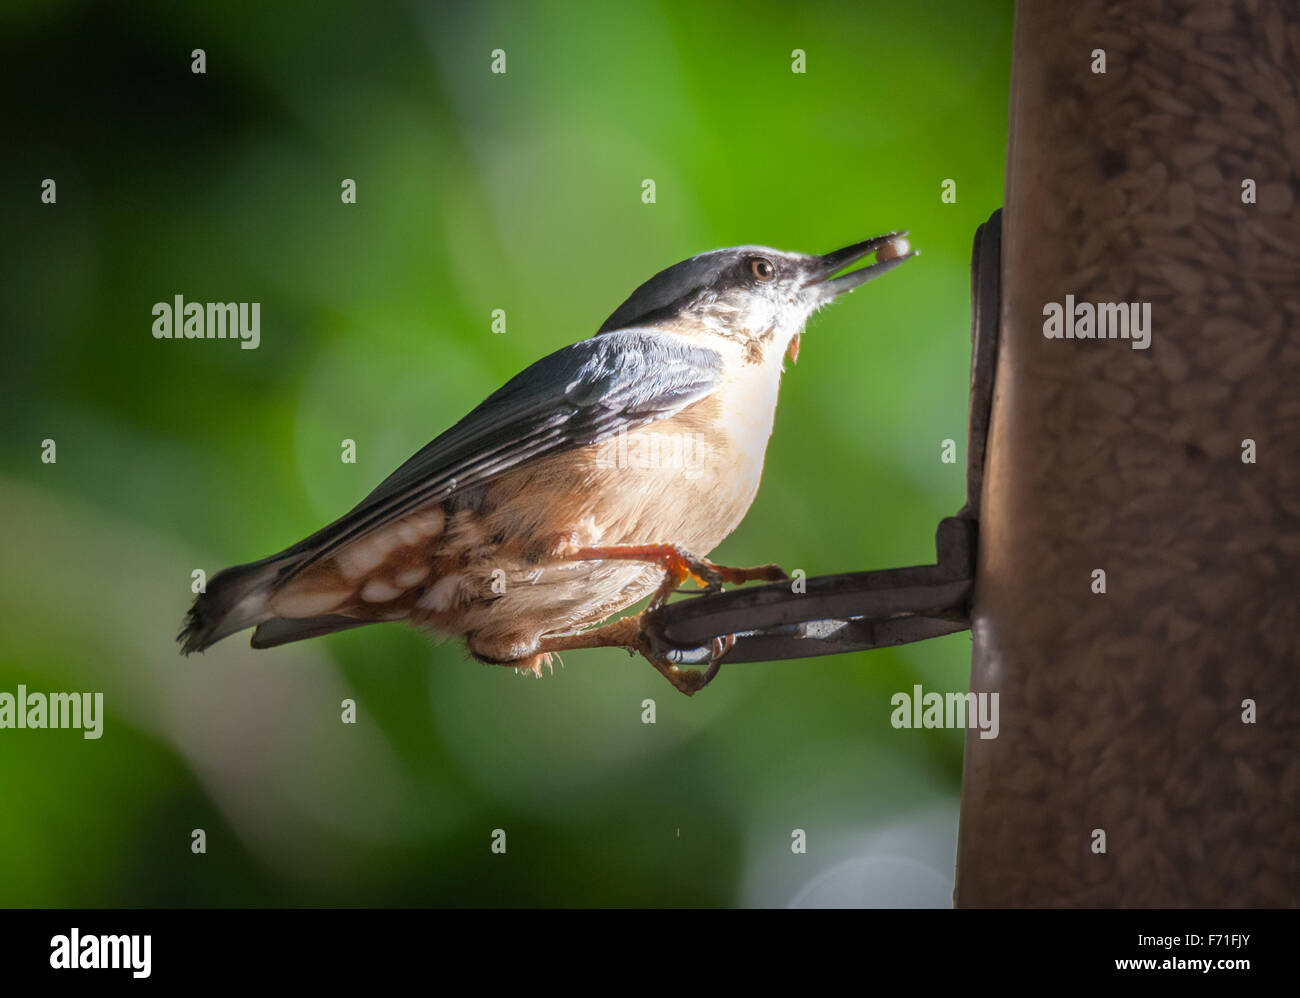 Nut hatch at bird feeder Stock Photo